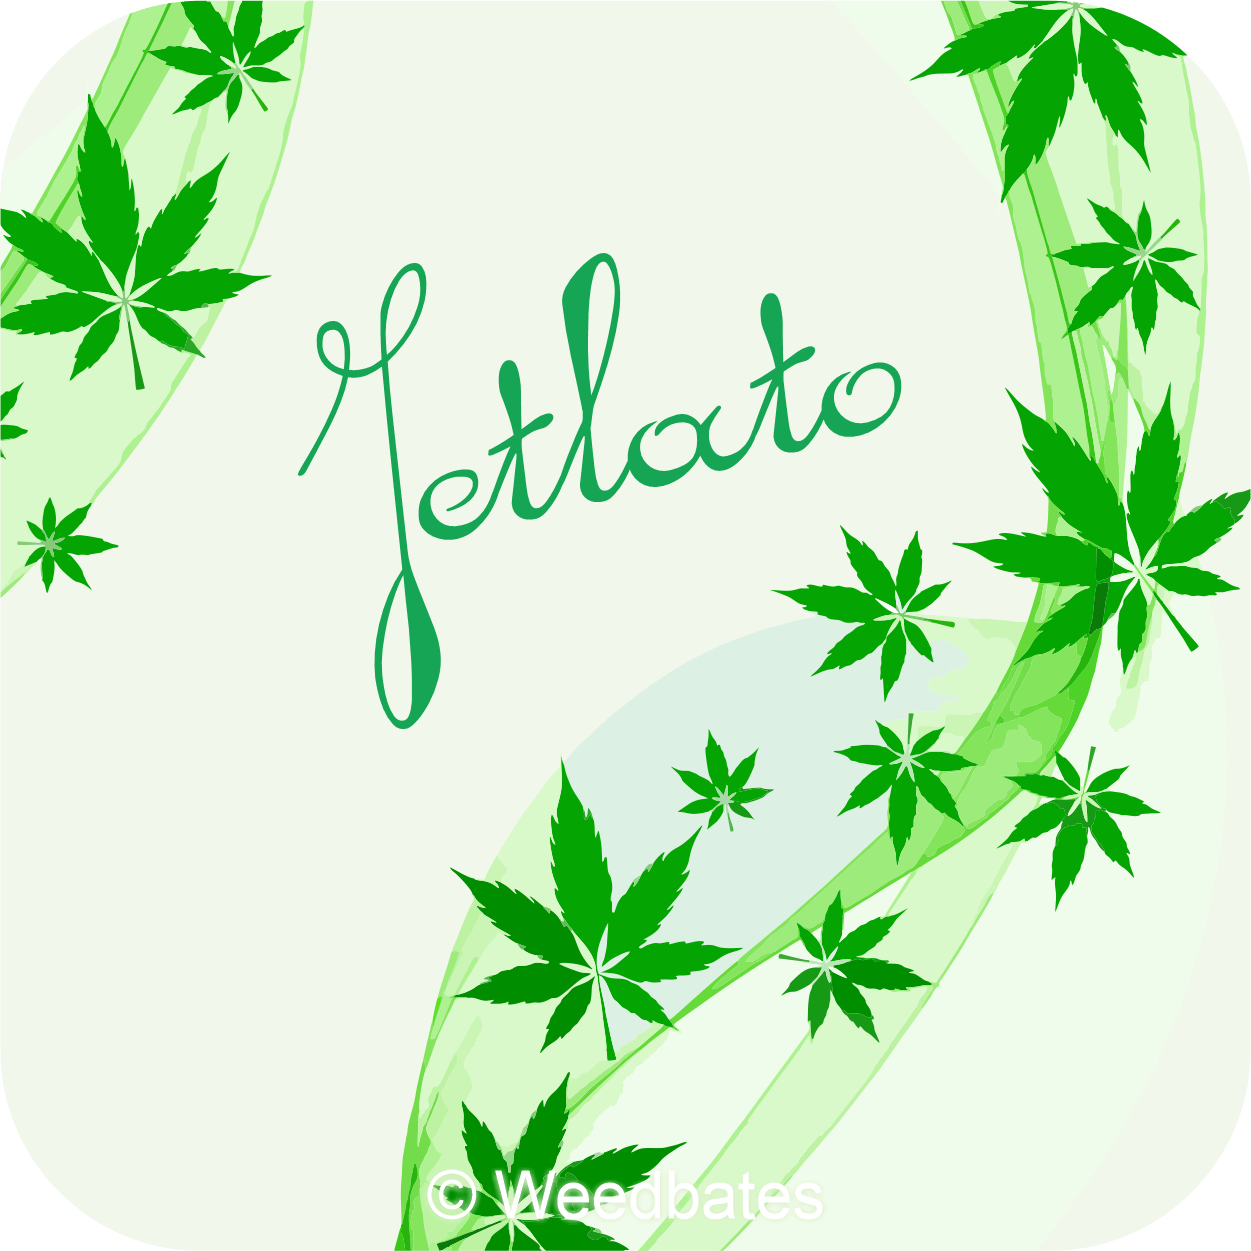 Jetlato marijuana strain